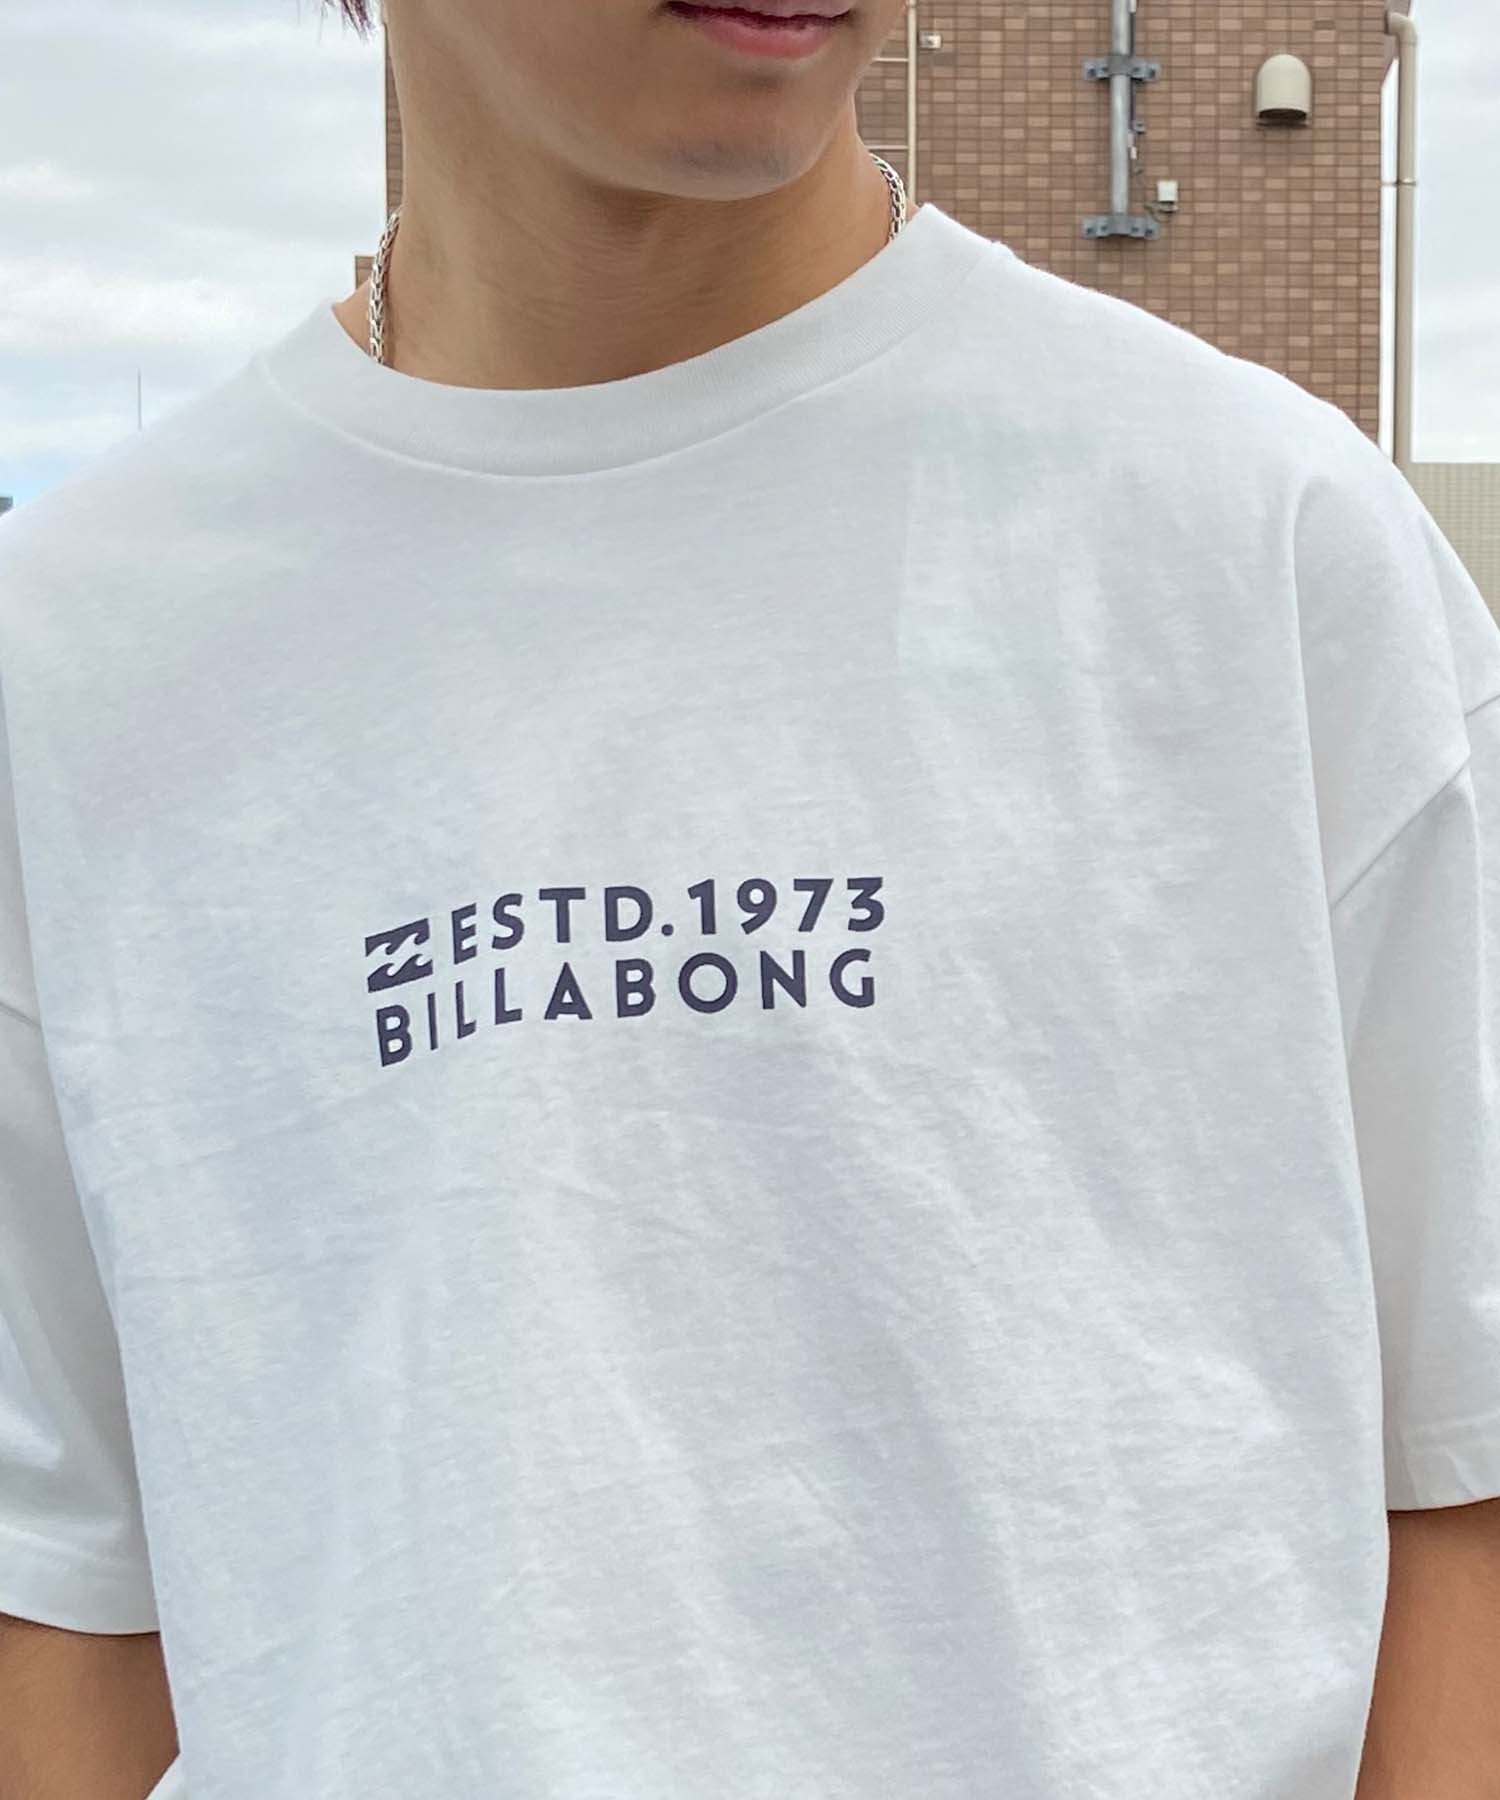 【マトメガイ対象】BILLABONG ビラボン DECALE WIDE メンズ Tシャツ 半袖 バックプリント BE011-212(OFW-M)